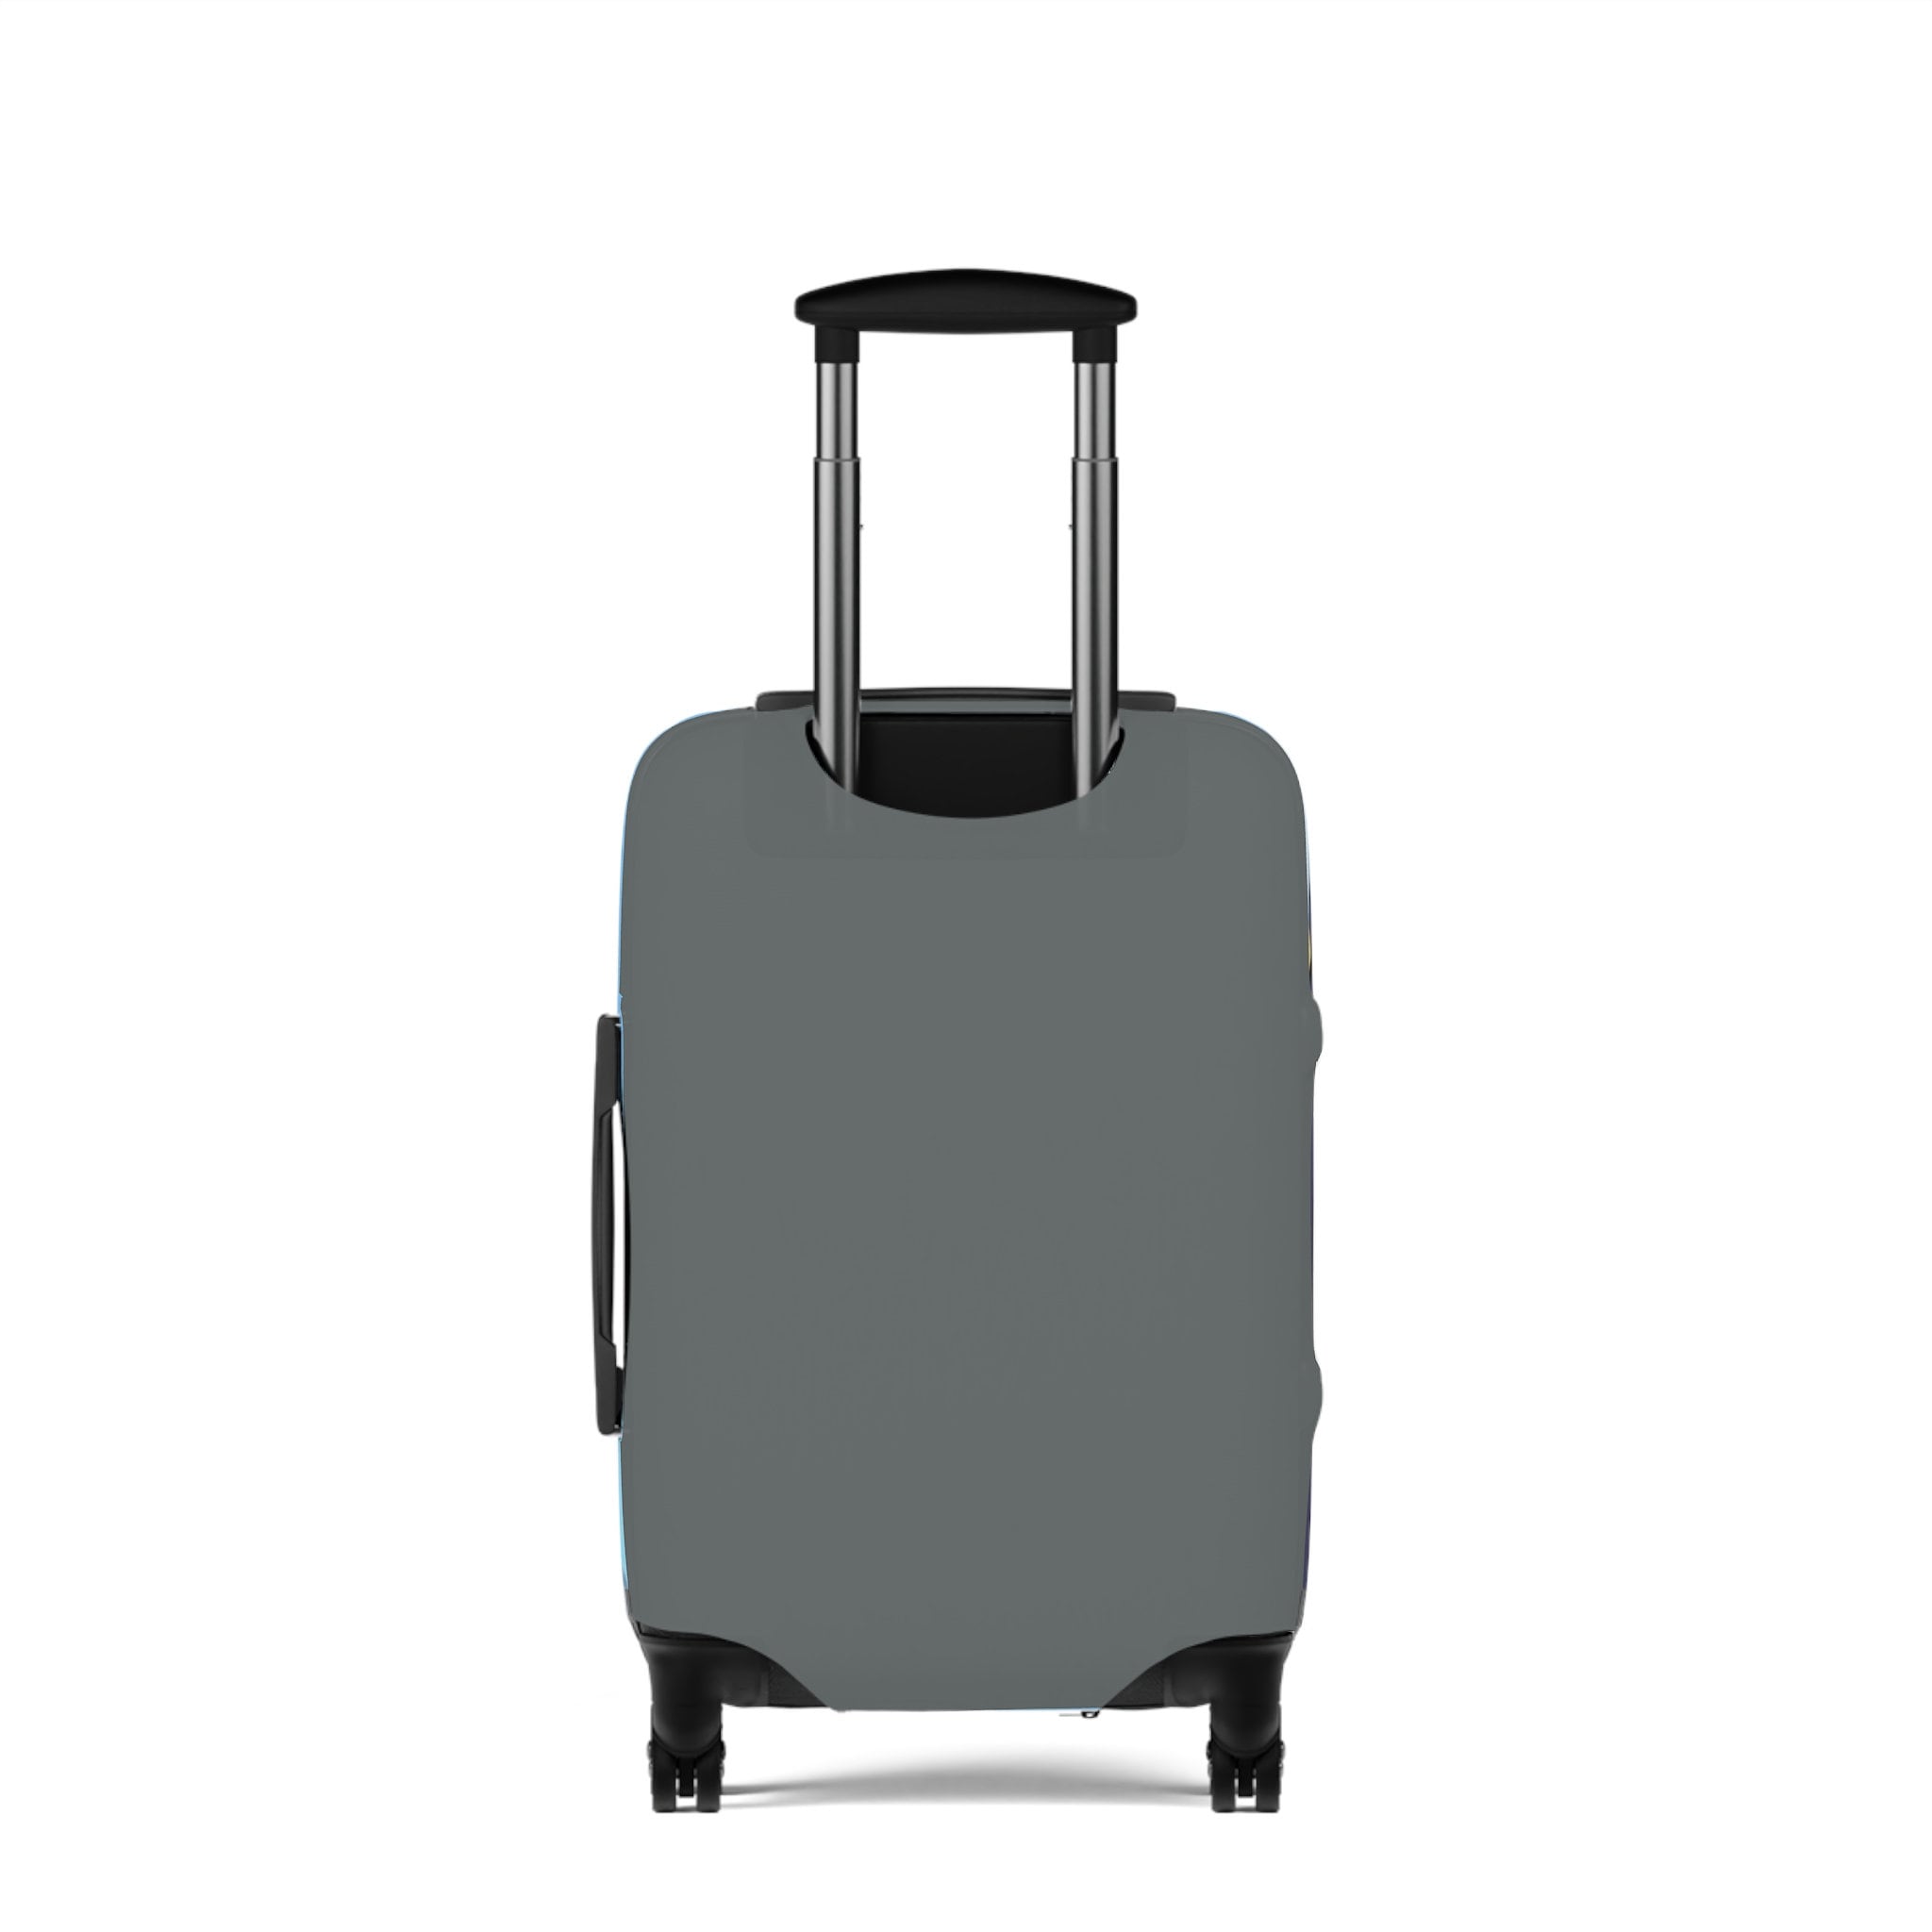 BlueyDad Luggage Cover